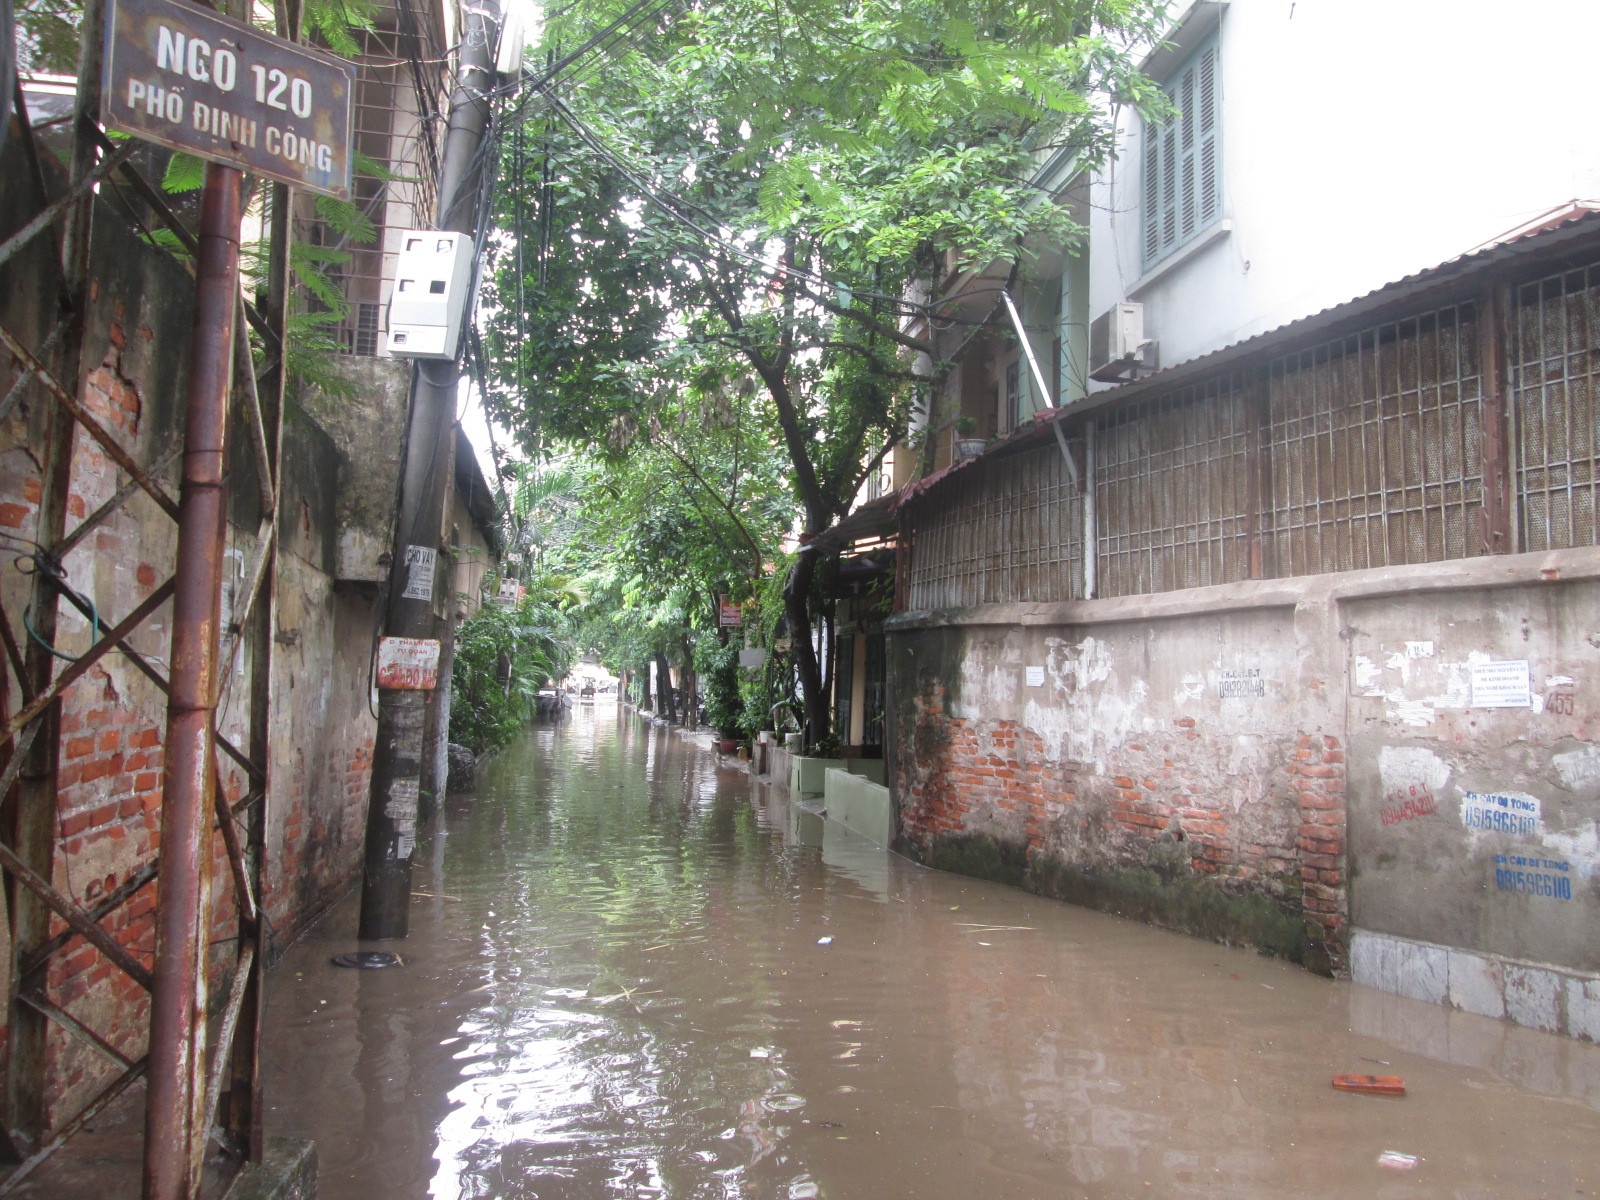 Hà Nội: Tích cực xả nước sau mưa lớn